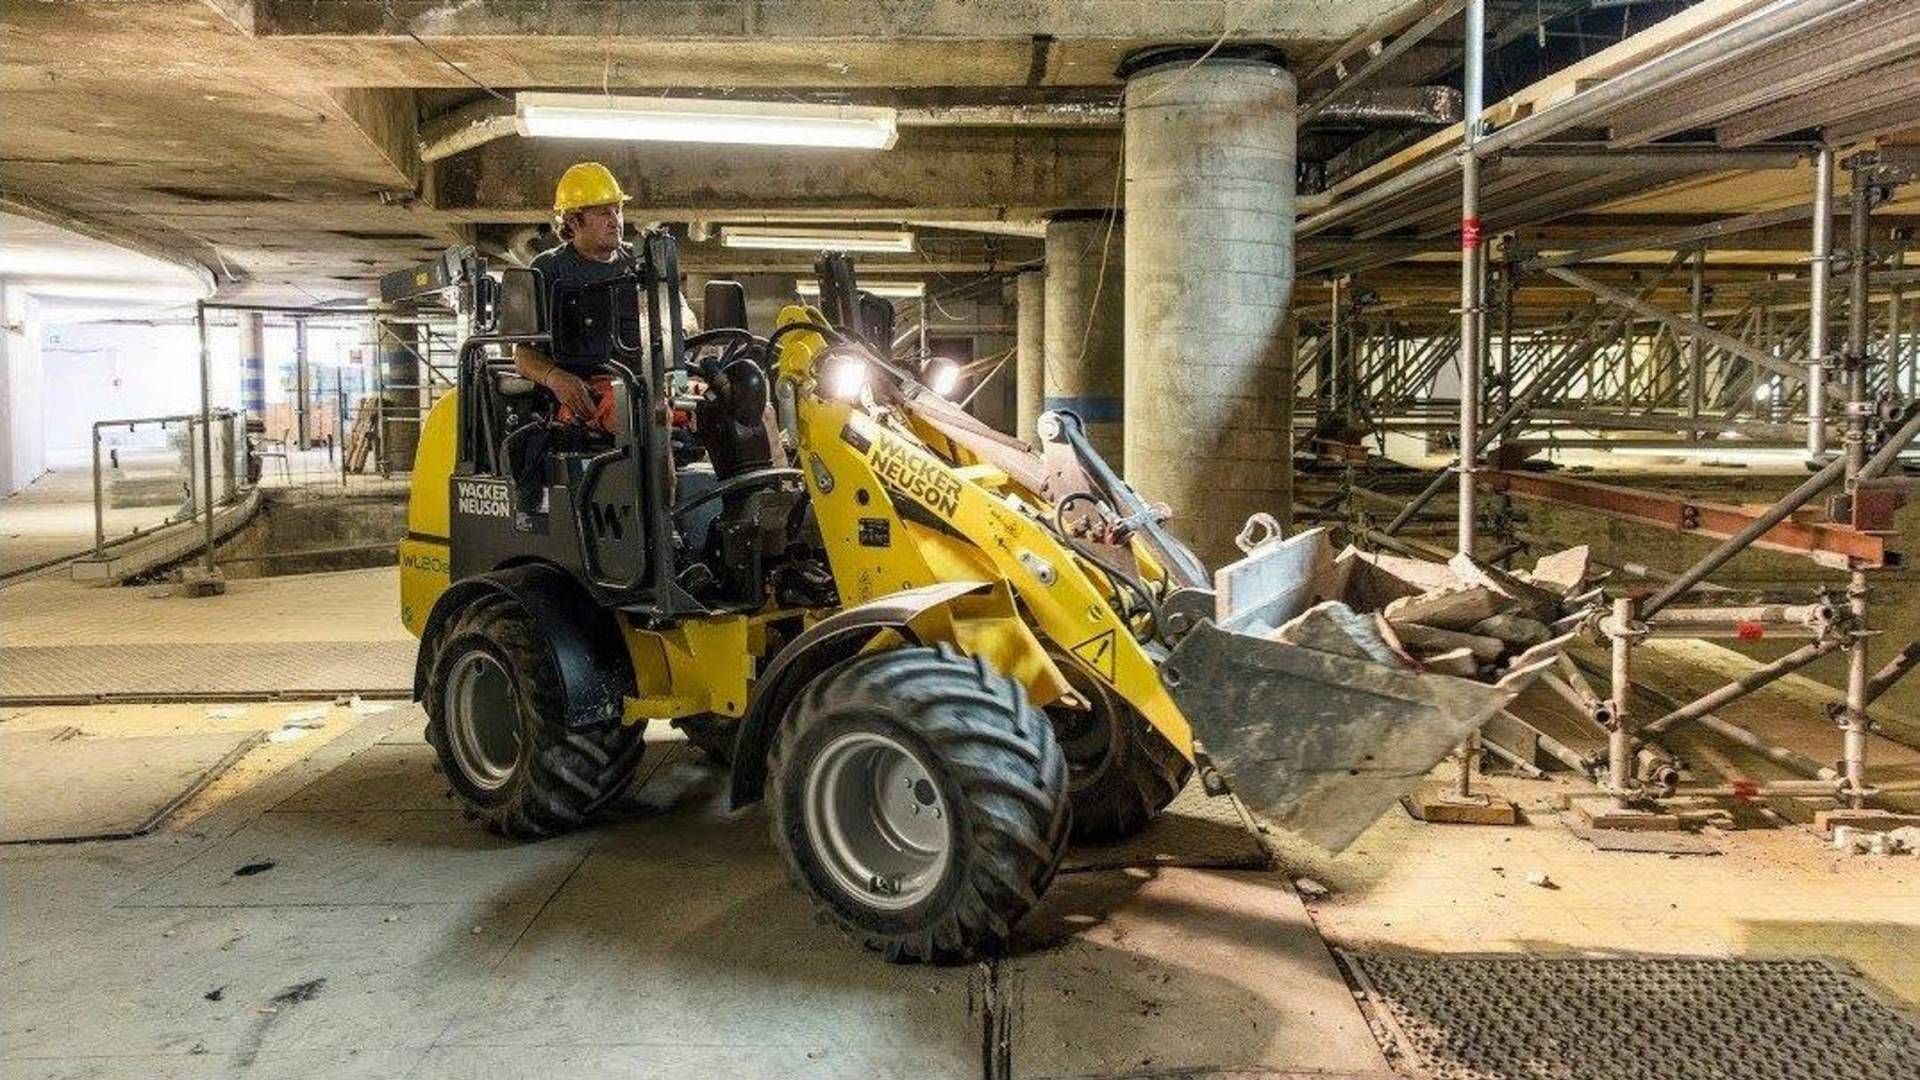 Det er virksomheden GSV Materieludlejning, der udlejer maskiner som denne eldrevne traktor, som nu har indgået en 15-årige lejekontrakt. | Foto: PR / GSV Materieludlejning